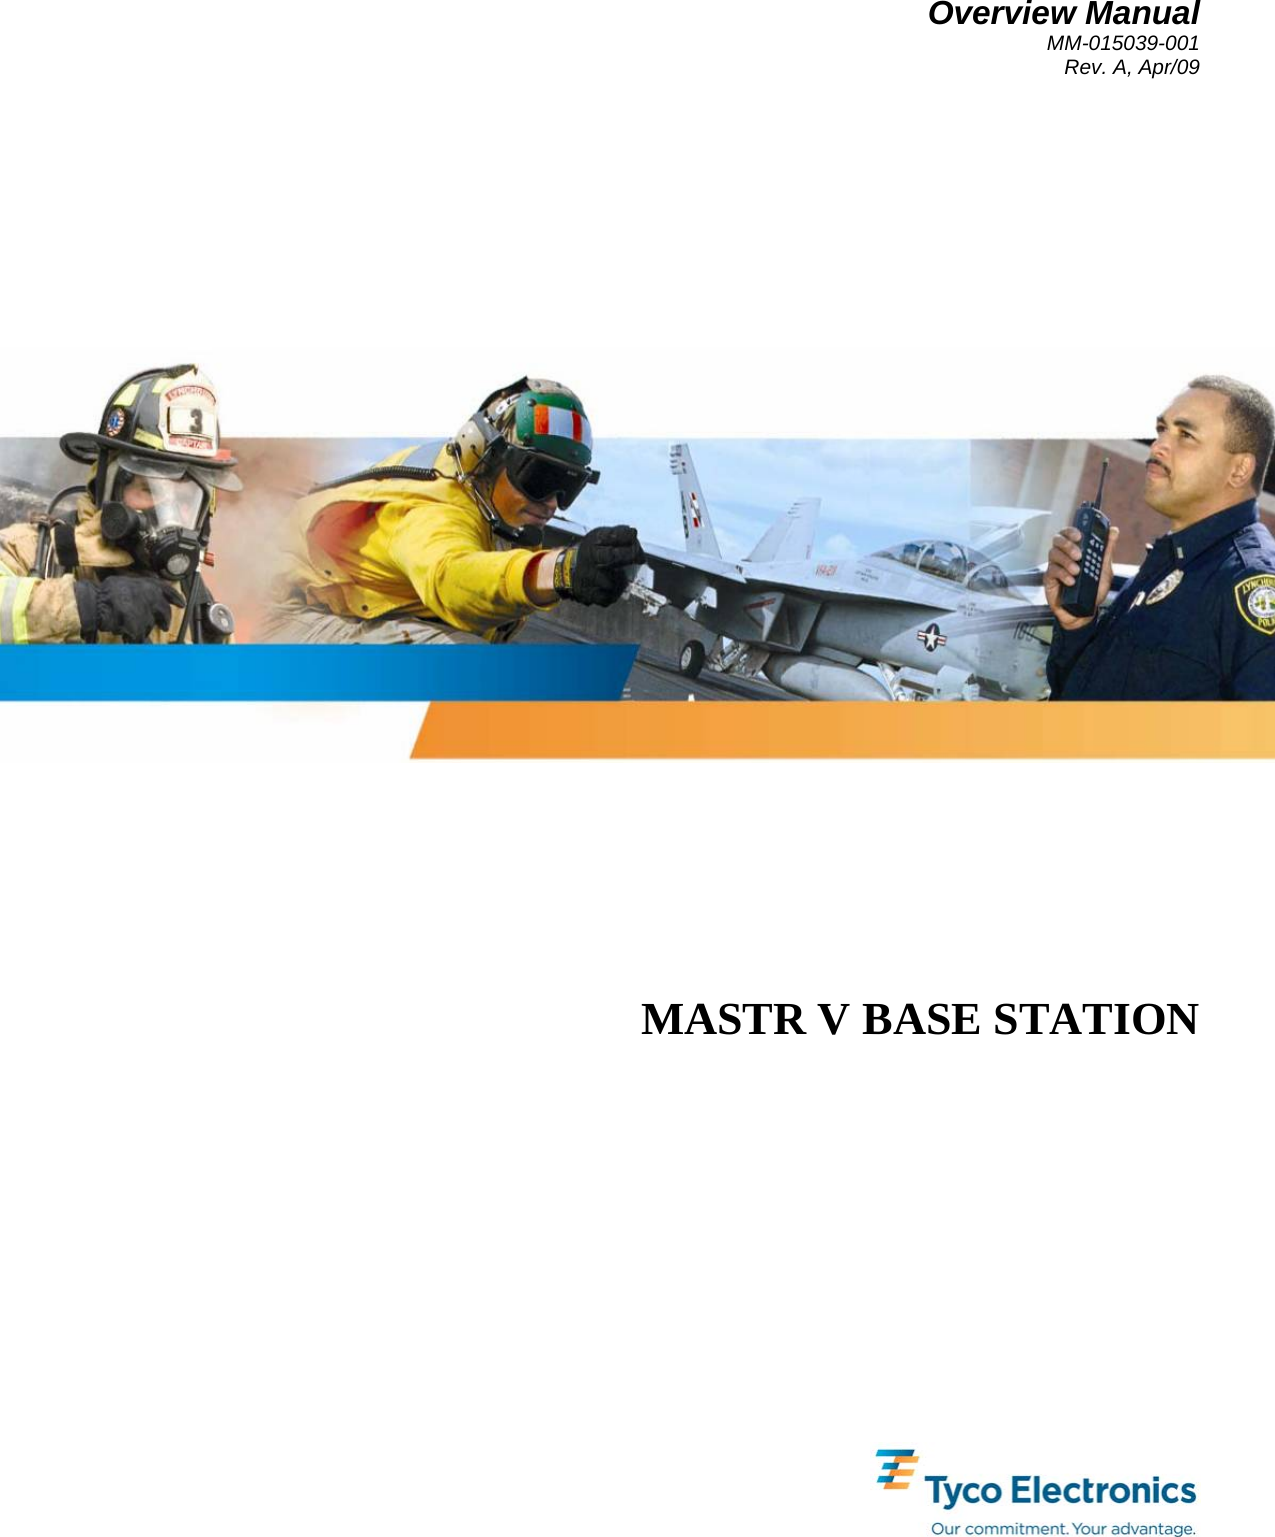 Overview Manual MM-015039-001 Rev. A, Apr/09   MASTR V BASE STATION 